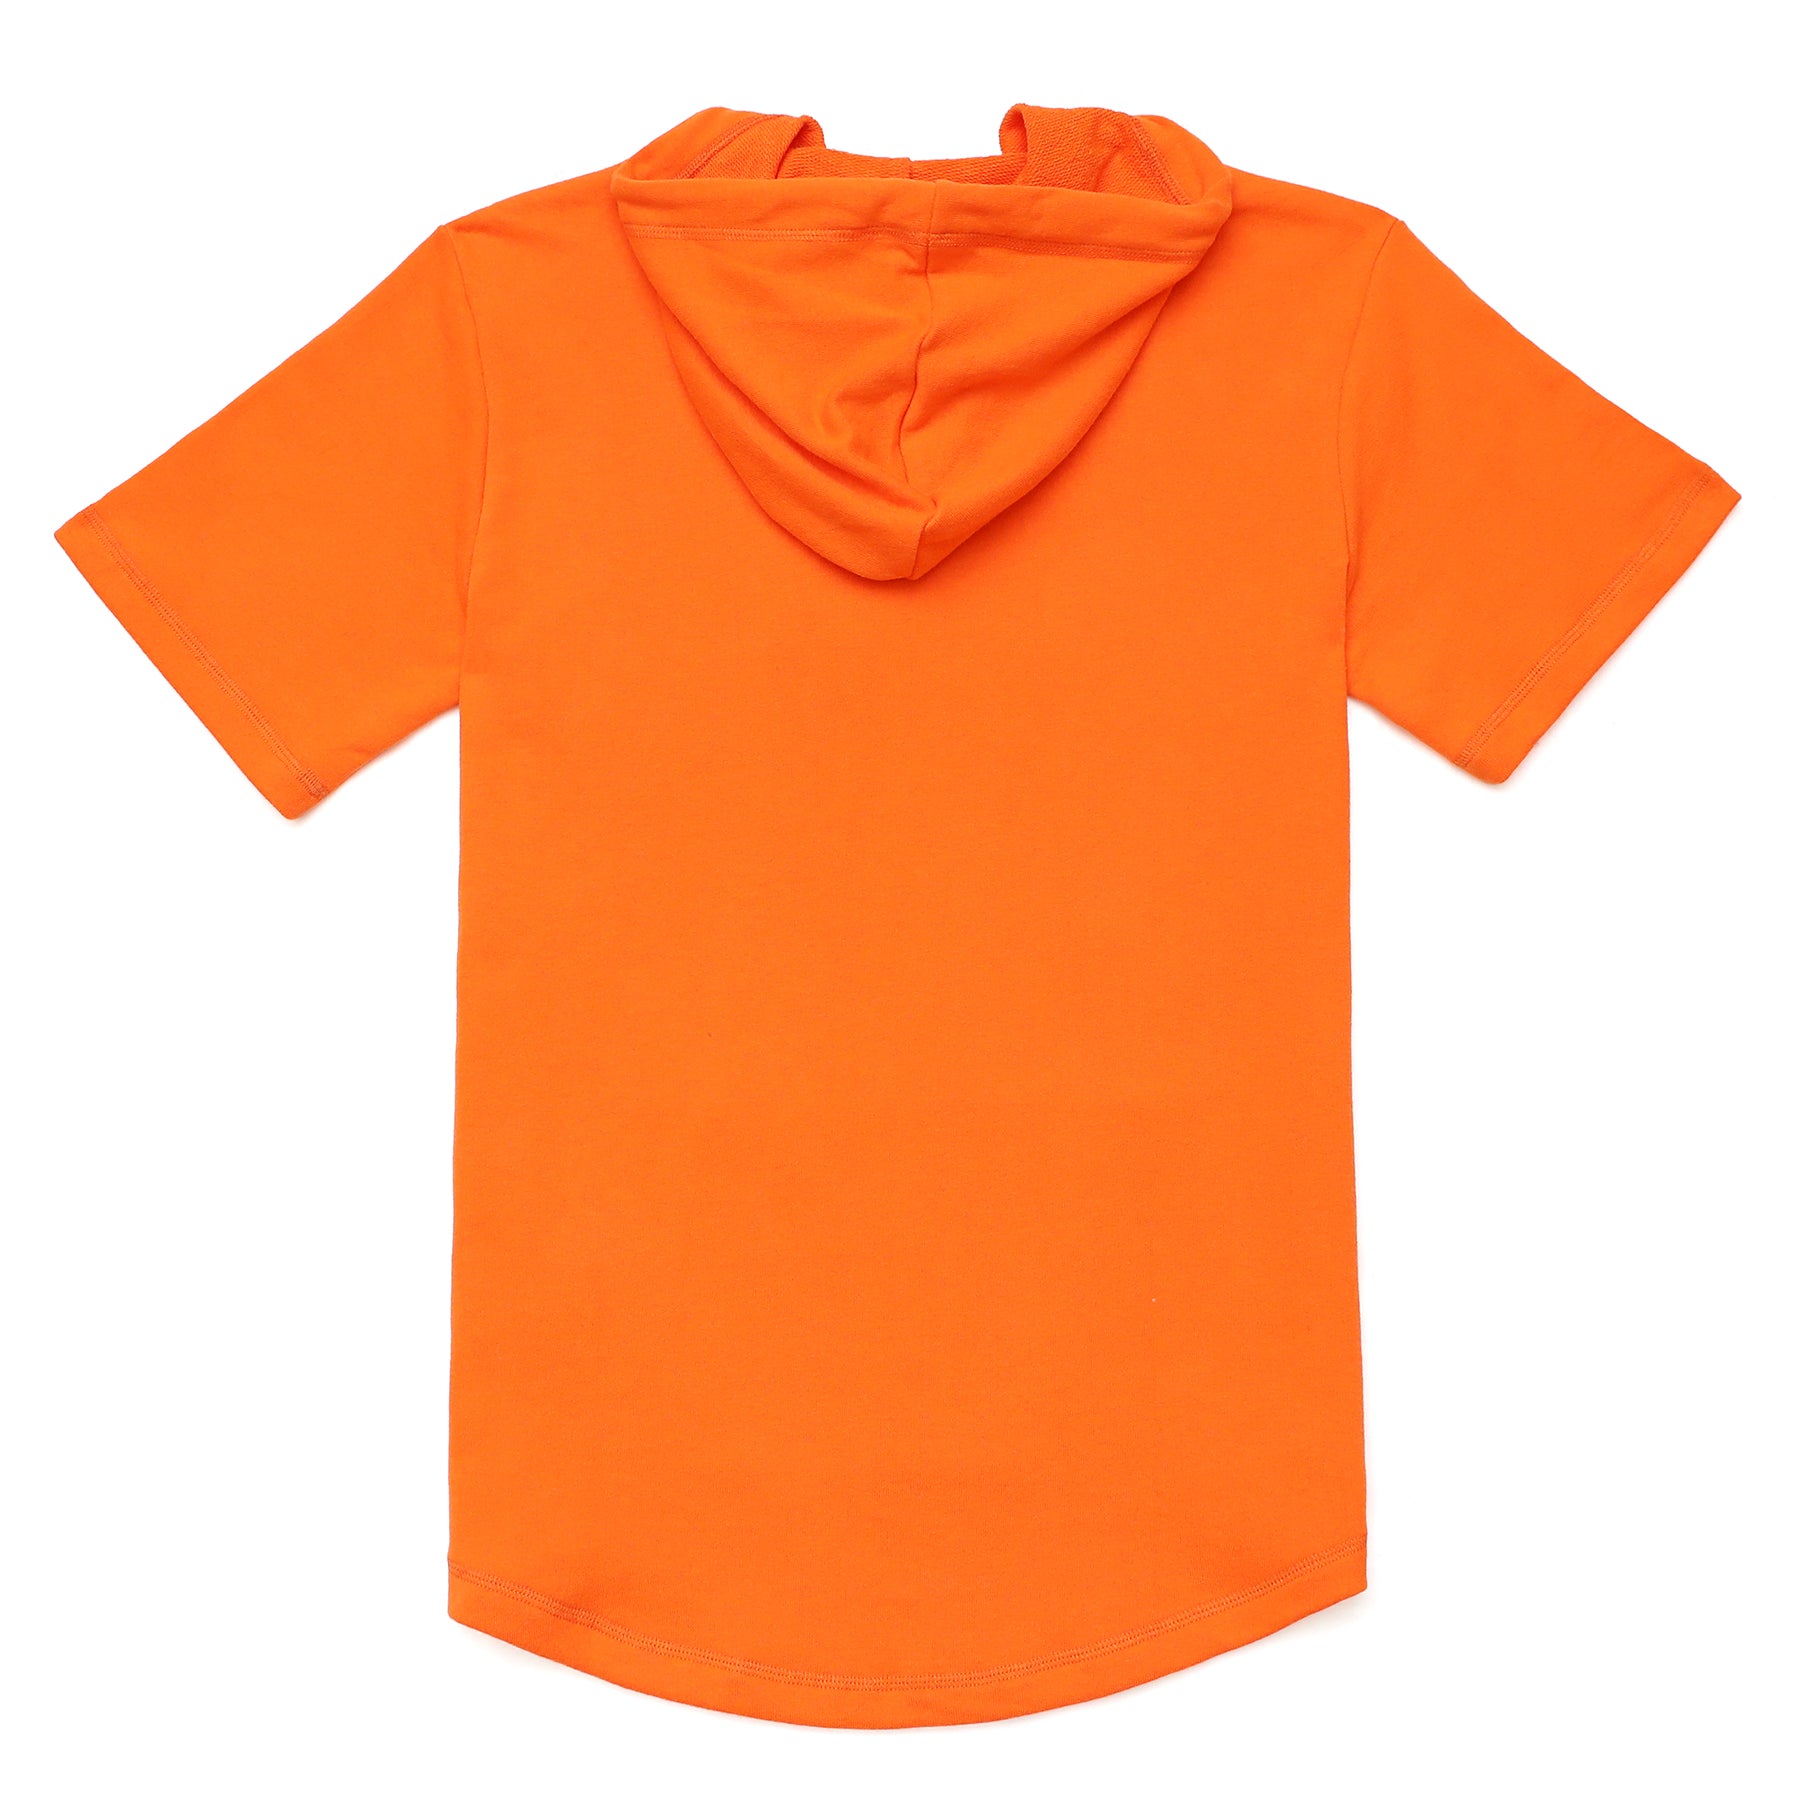 Men's Hoodies short-sleeved hooded sweatshirt #0609